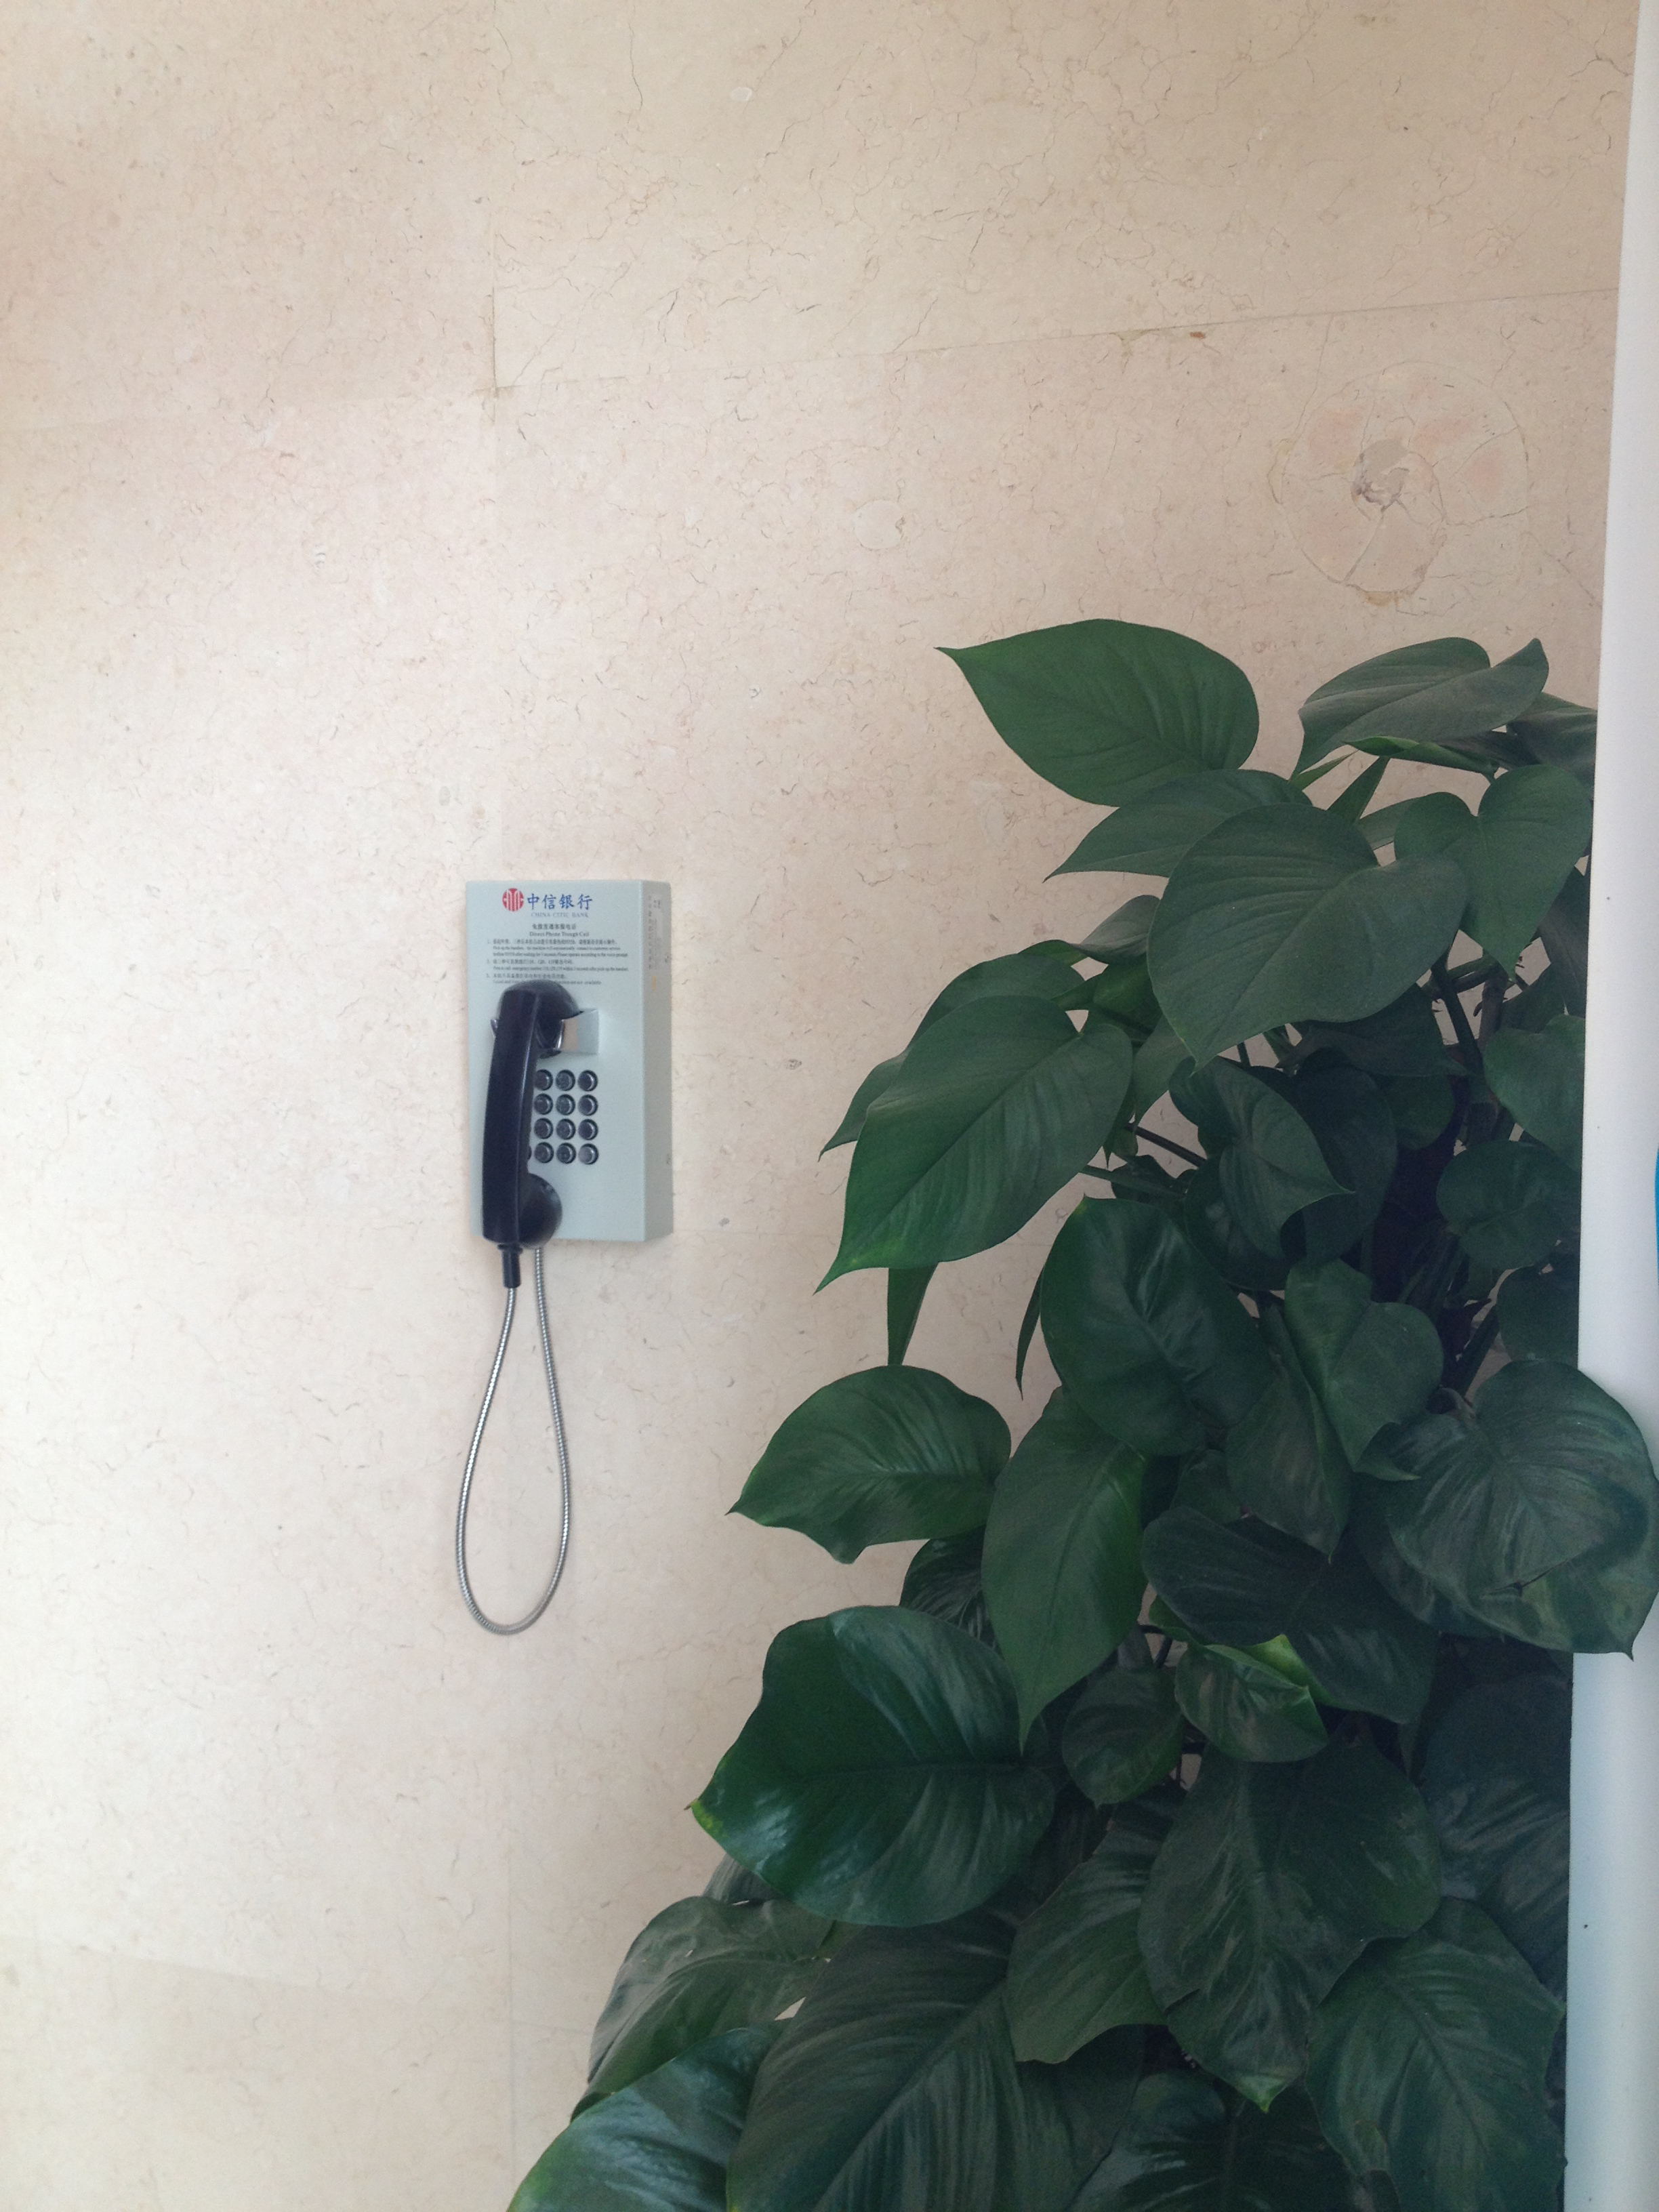 壁挂式电话机